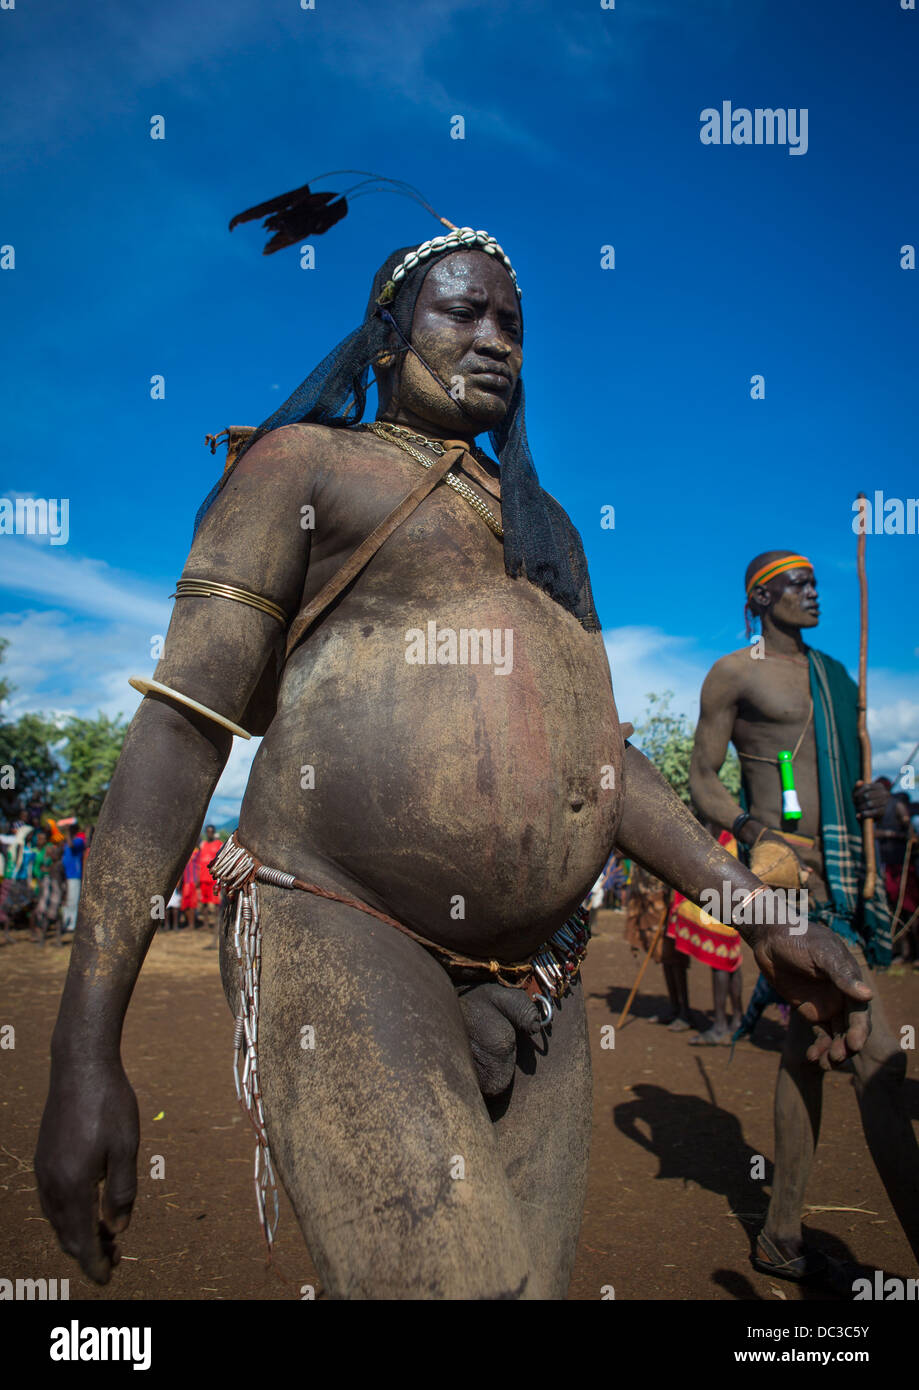 Fat African Man 51